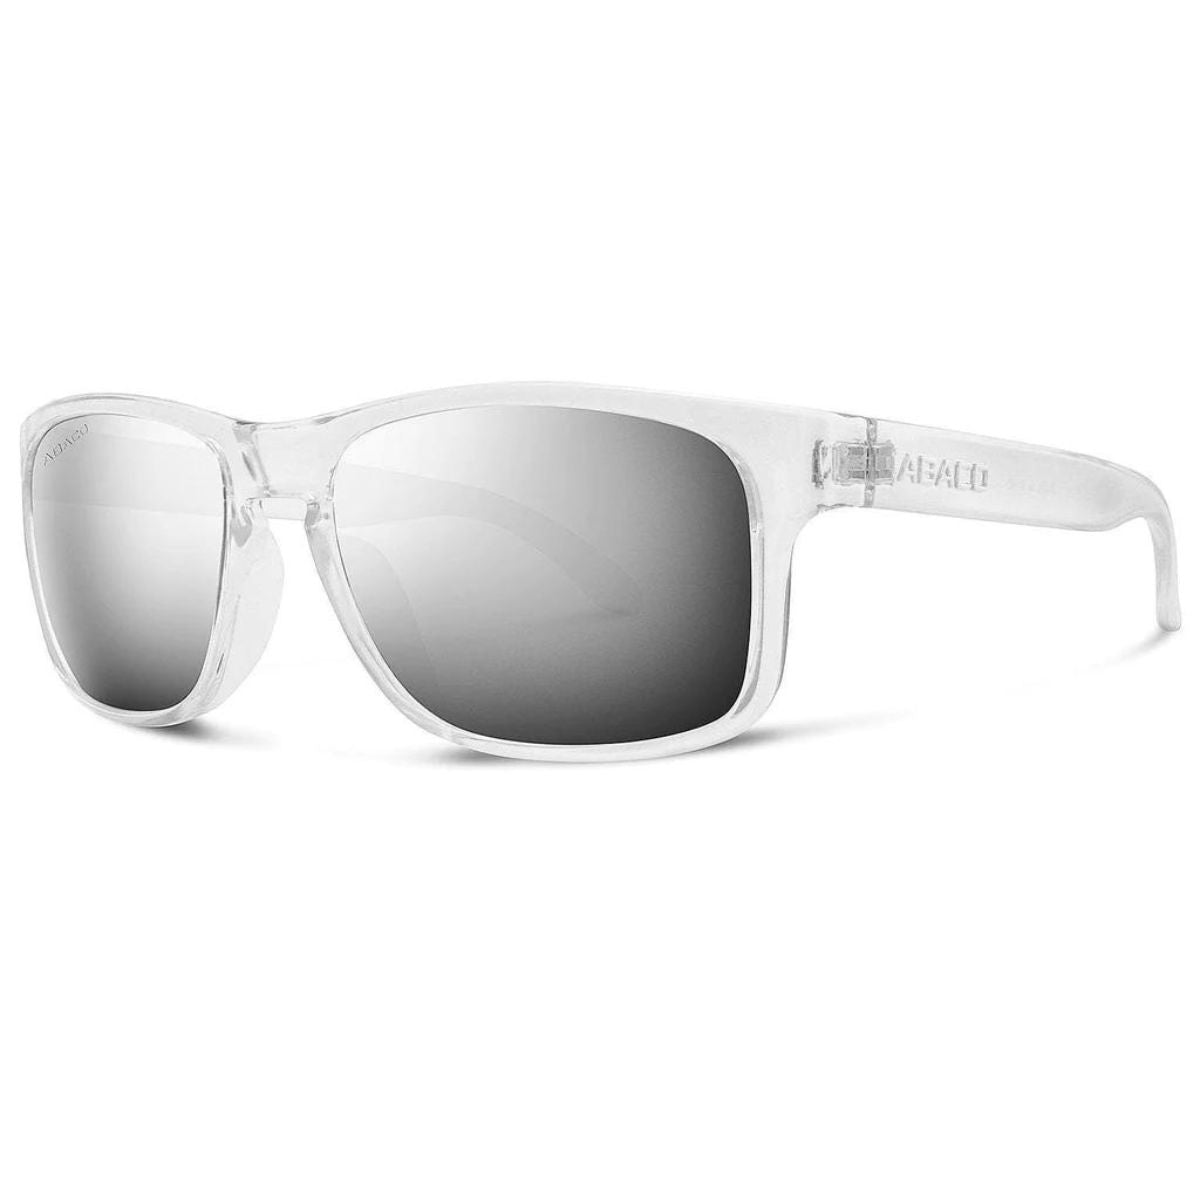 Abaco Dockside Sunglasses in Clear/Chrome Mirror - BoardCo